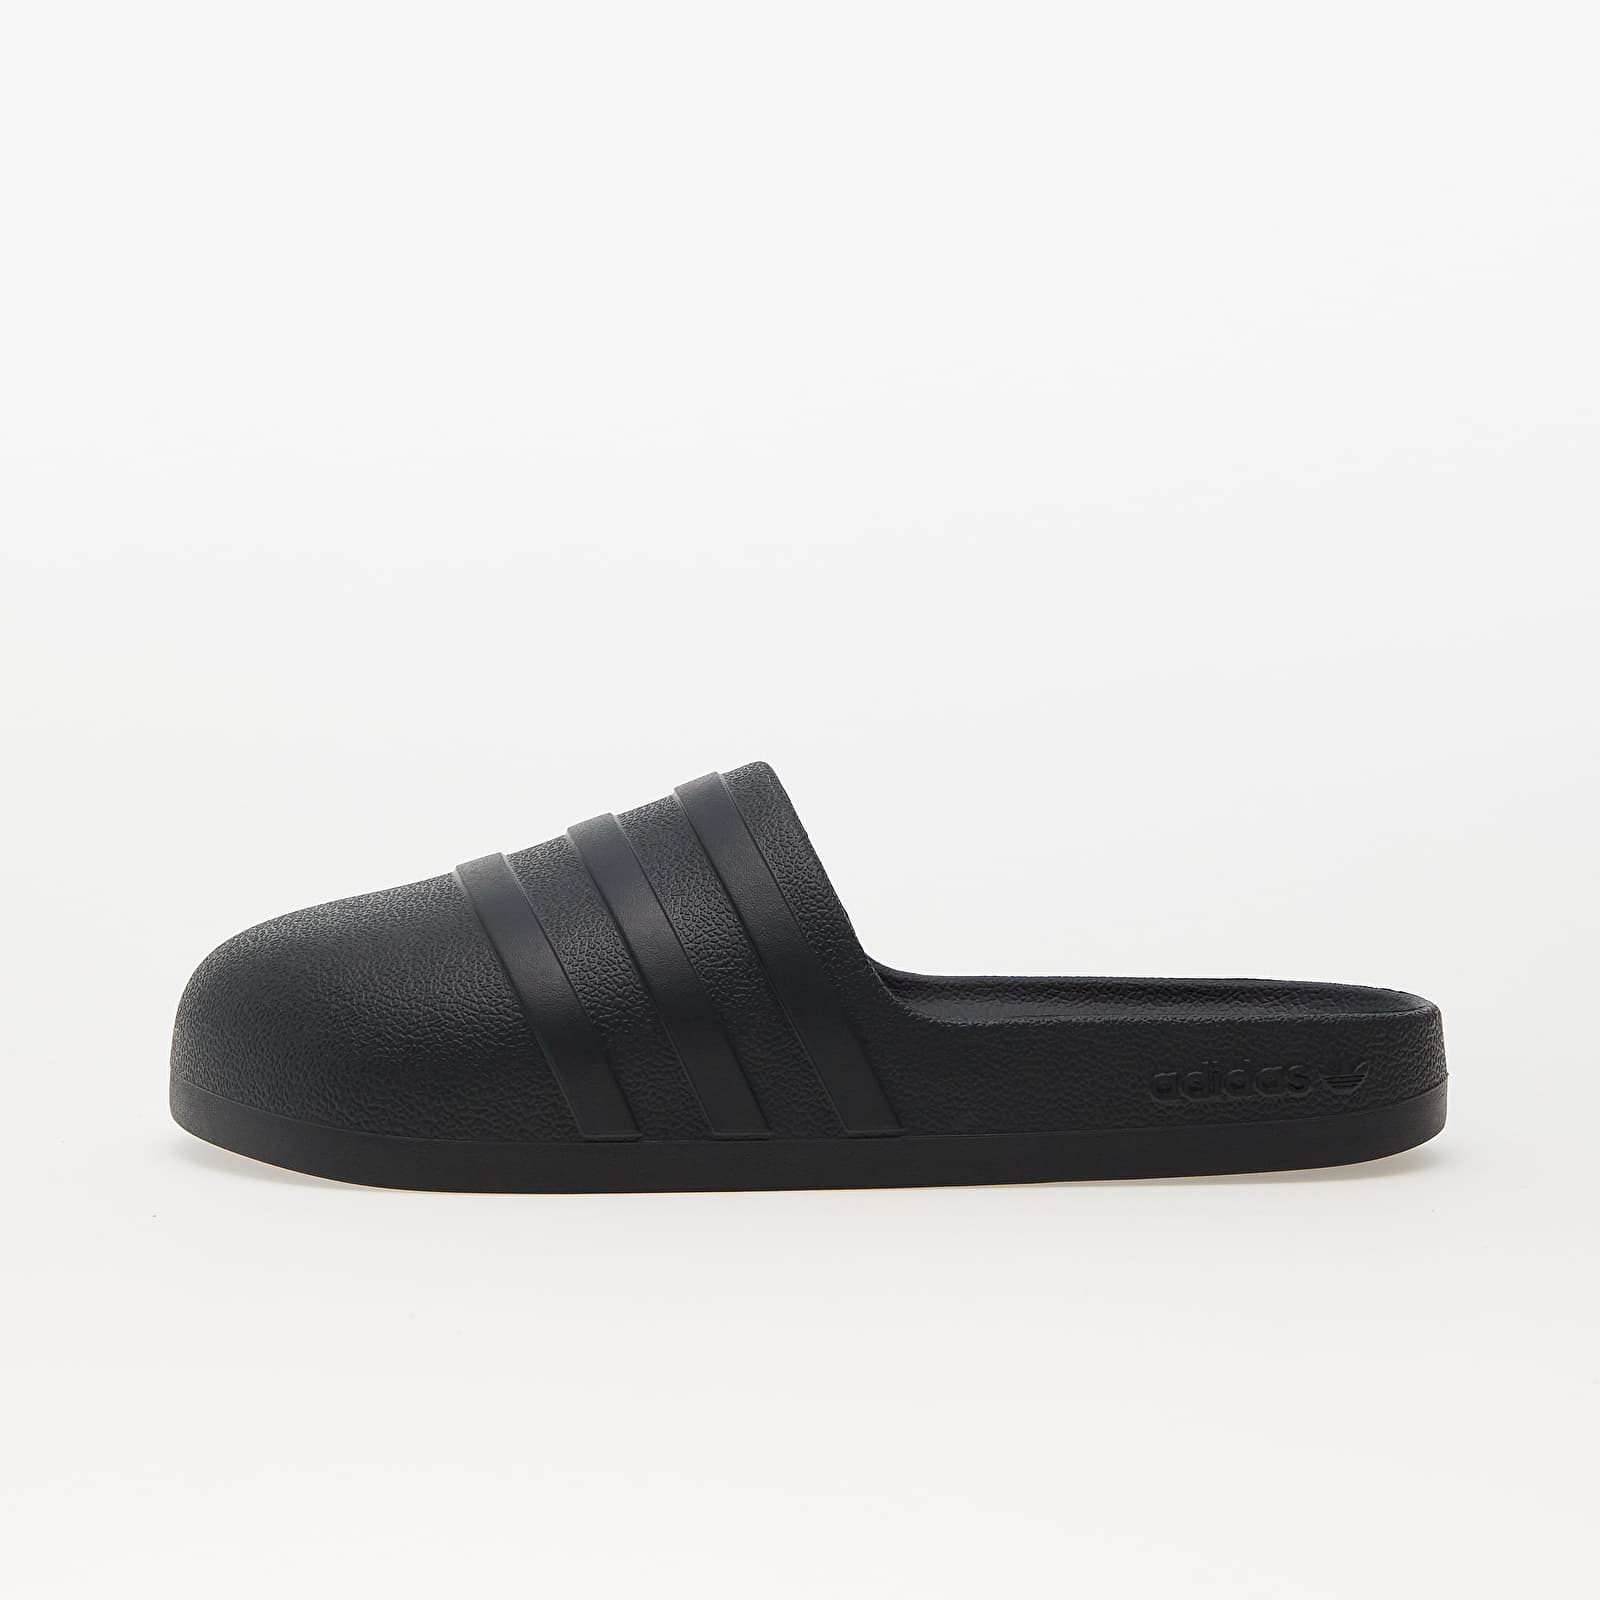 Men's shoes adidas AdiFOM Adilette Carbon/ Carbon/ Core Black